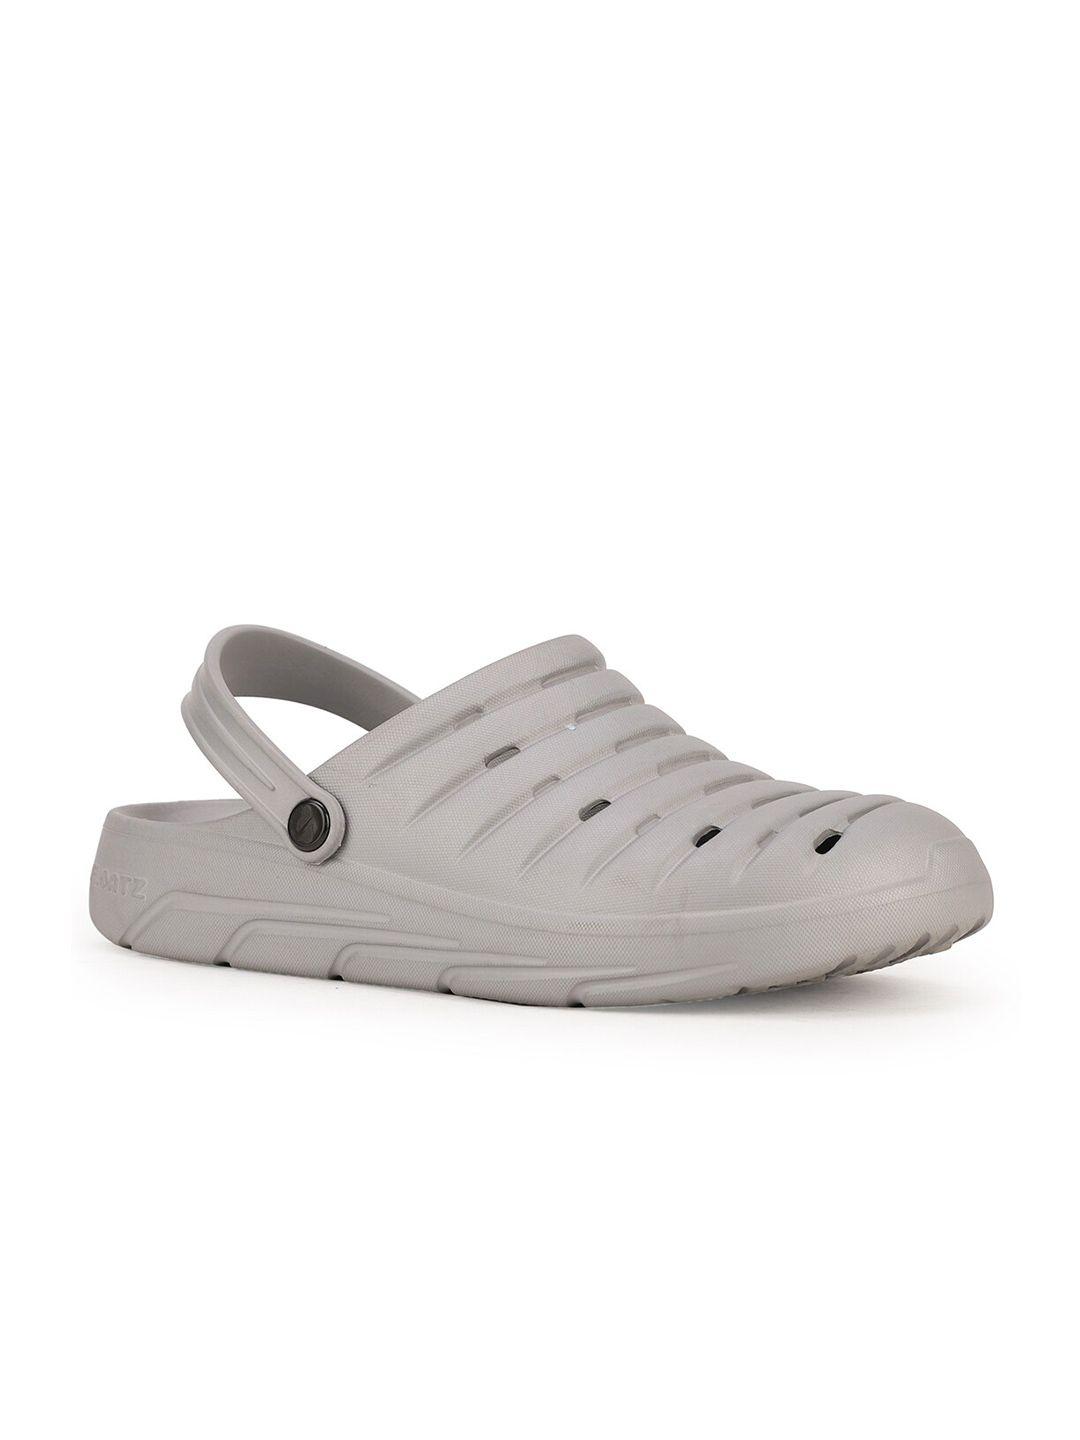 bata men grey solid clogs sandals